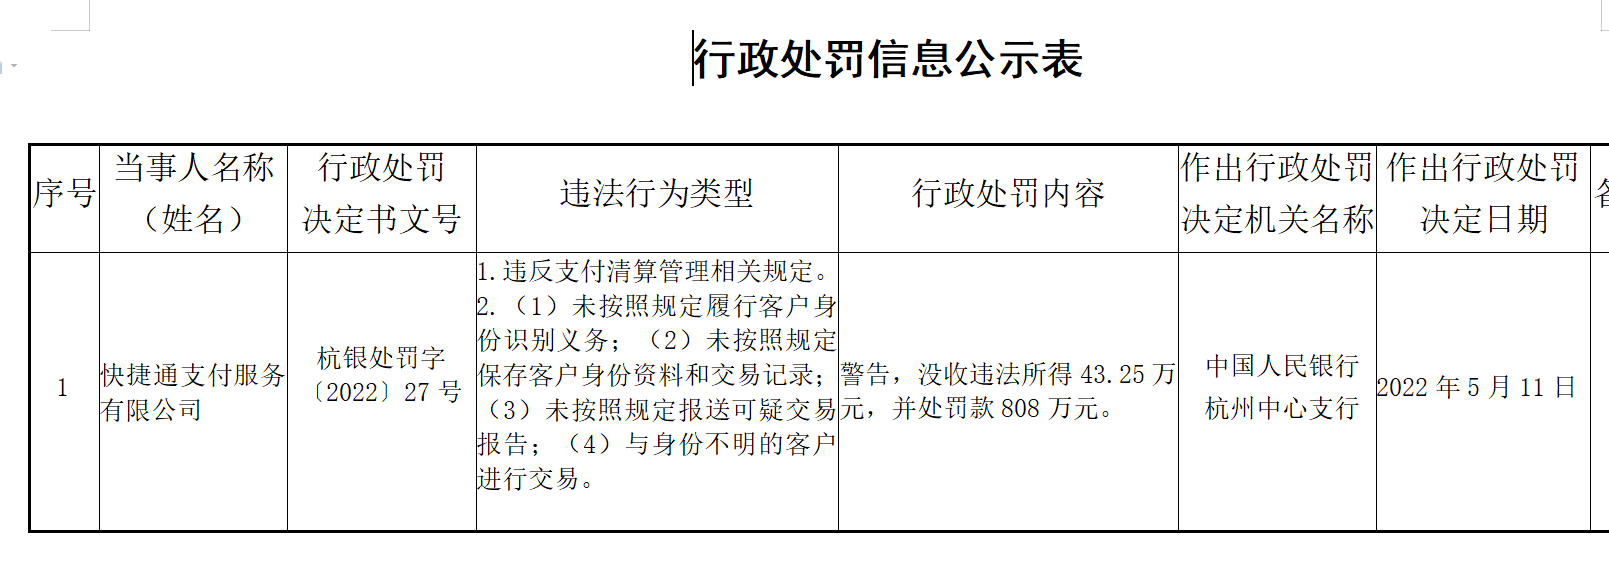 杭州快捷通支付服务存在5项违法行为被罚808万